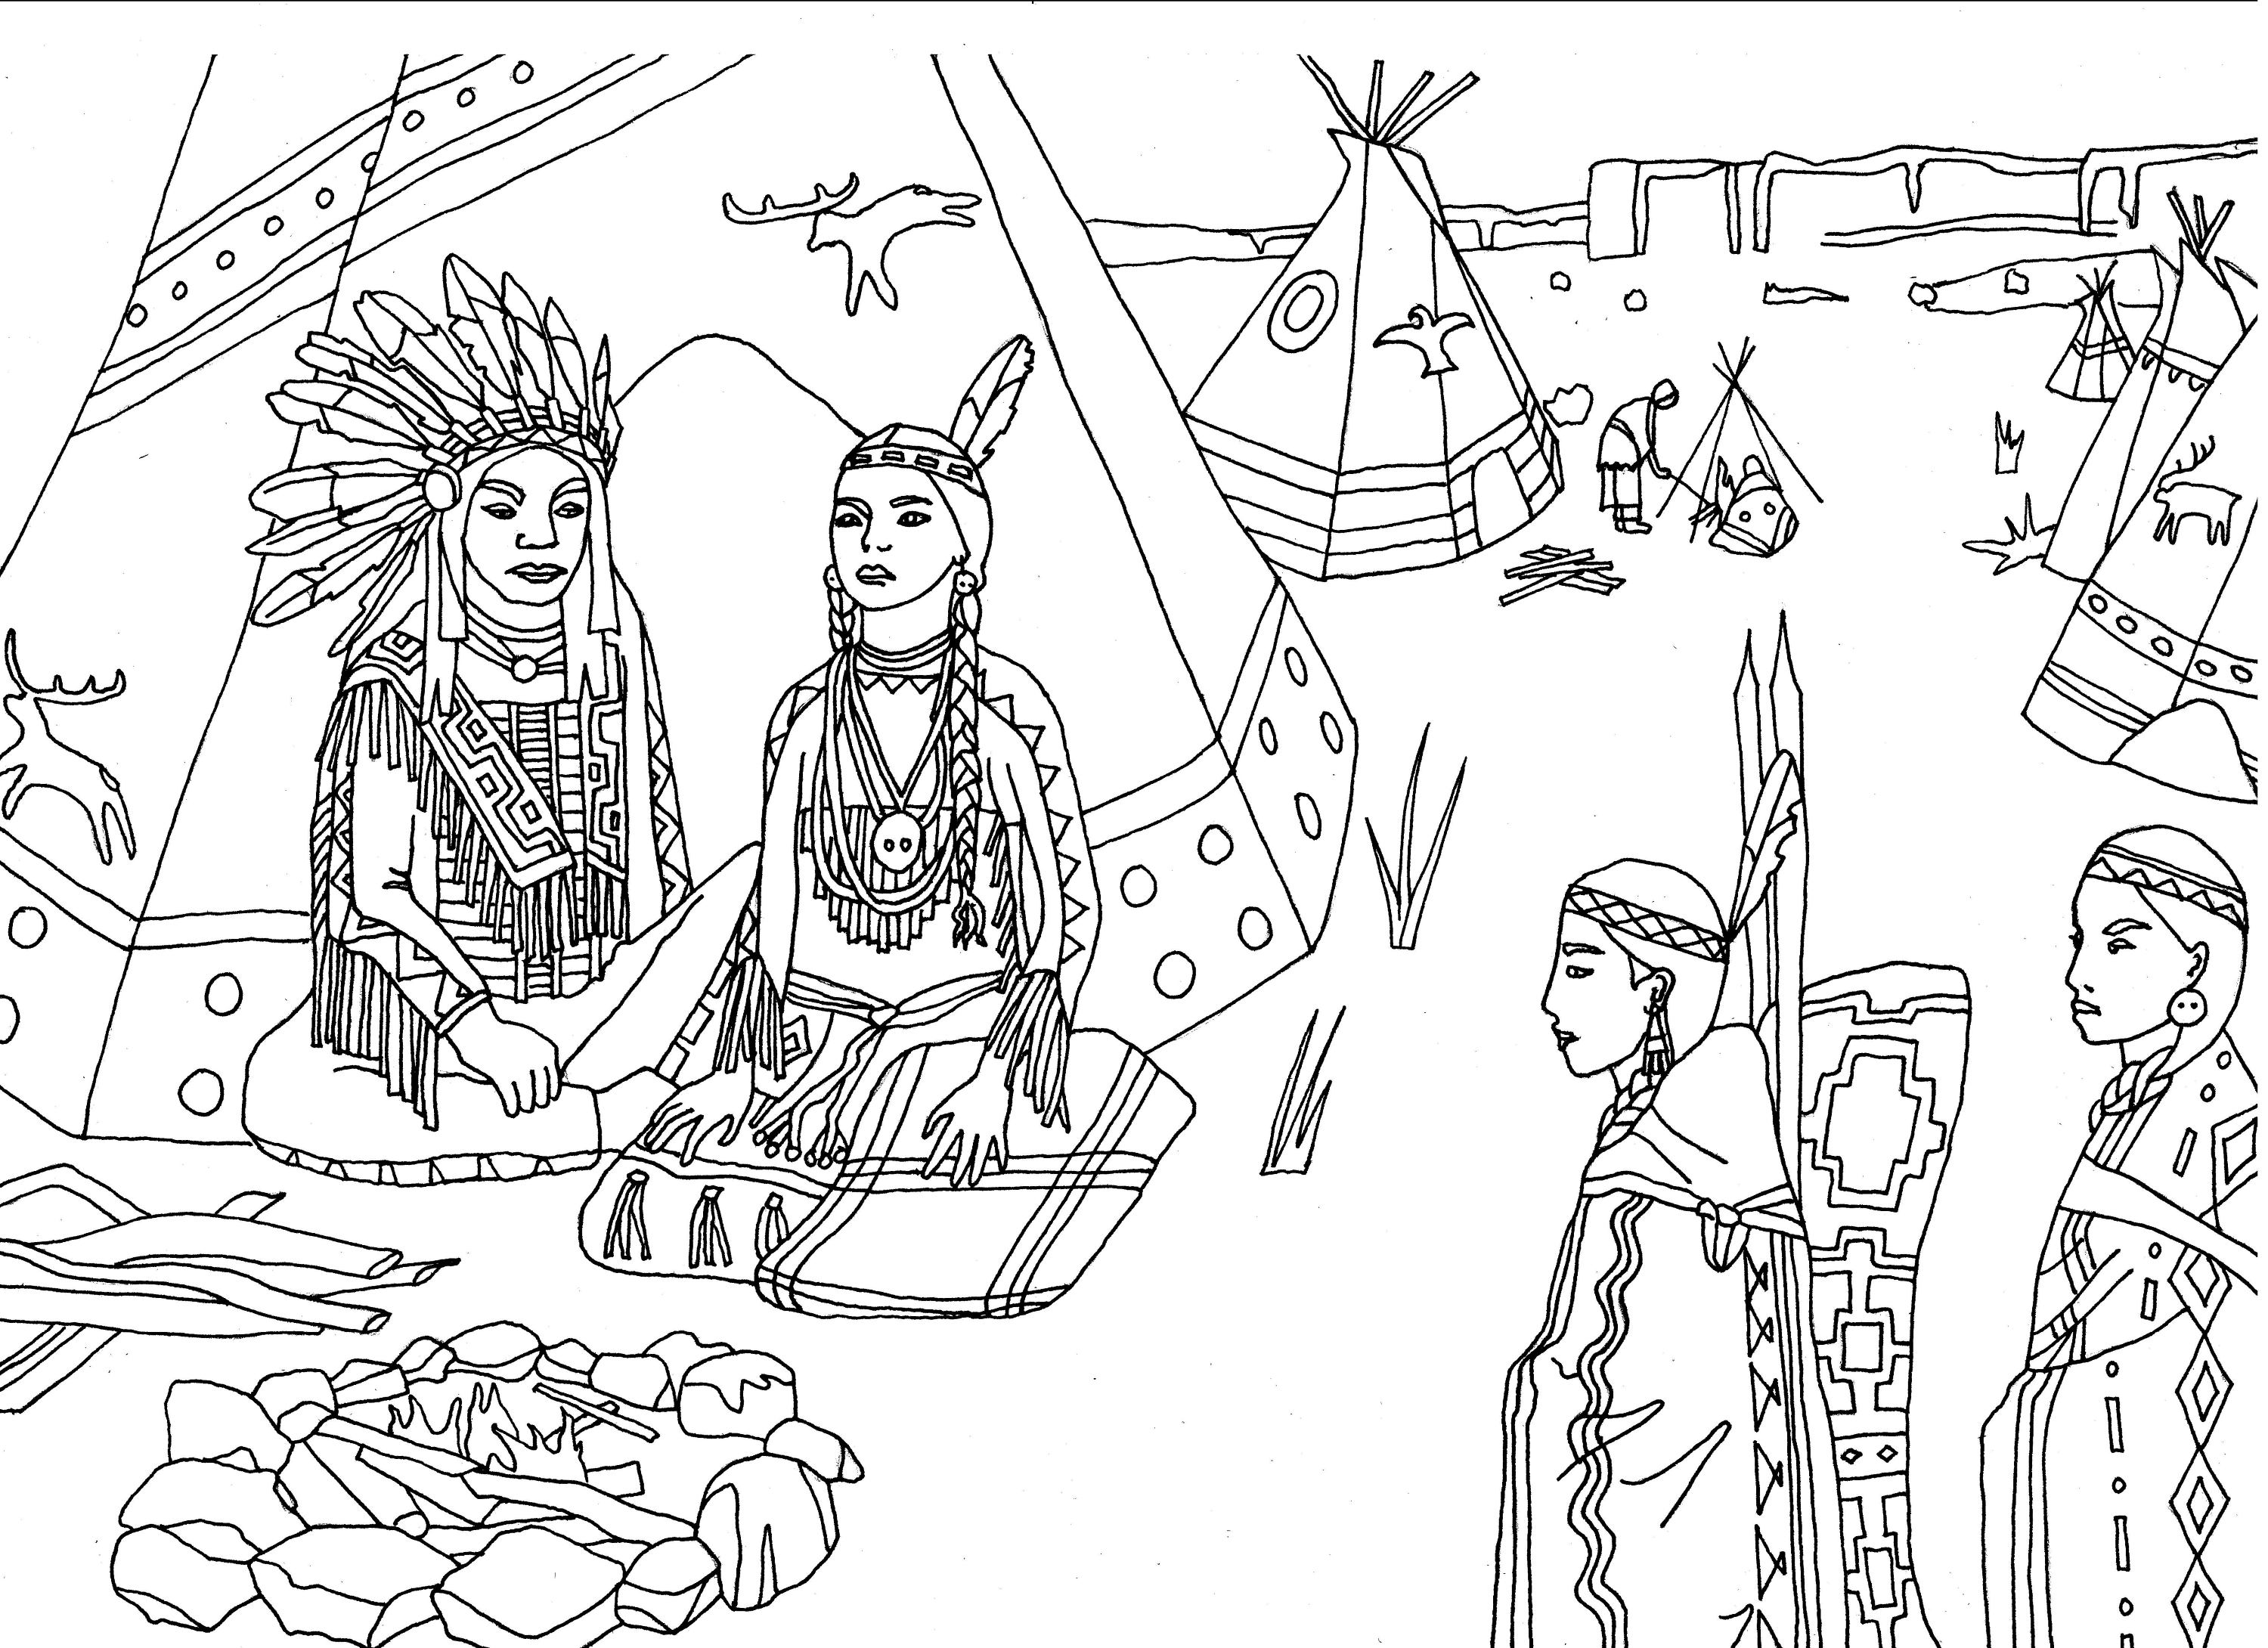 Los nativos americanos (indios) se sentaban frente a un tipi